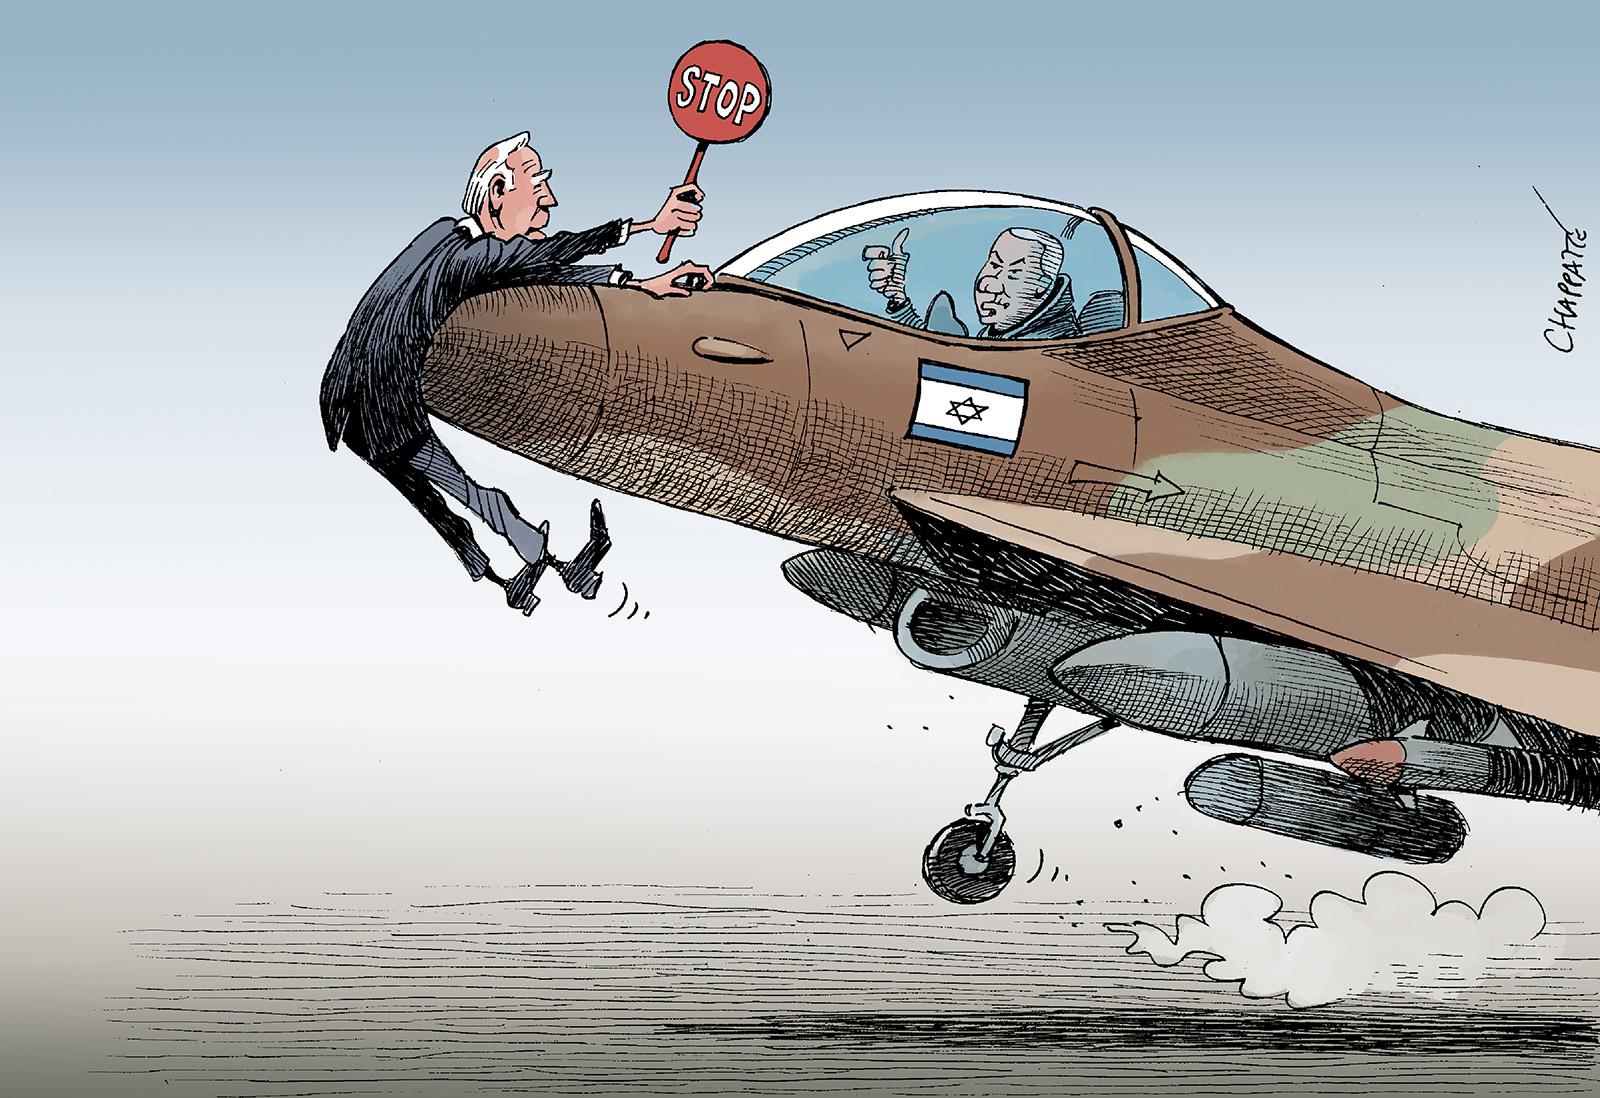 When Biden wants to slow Netanyahu down